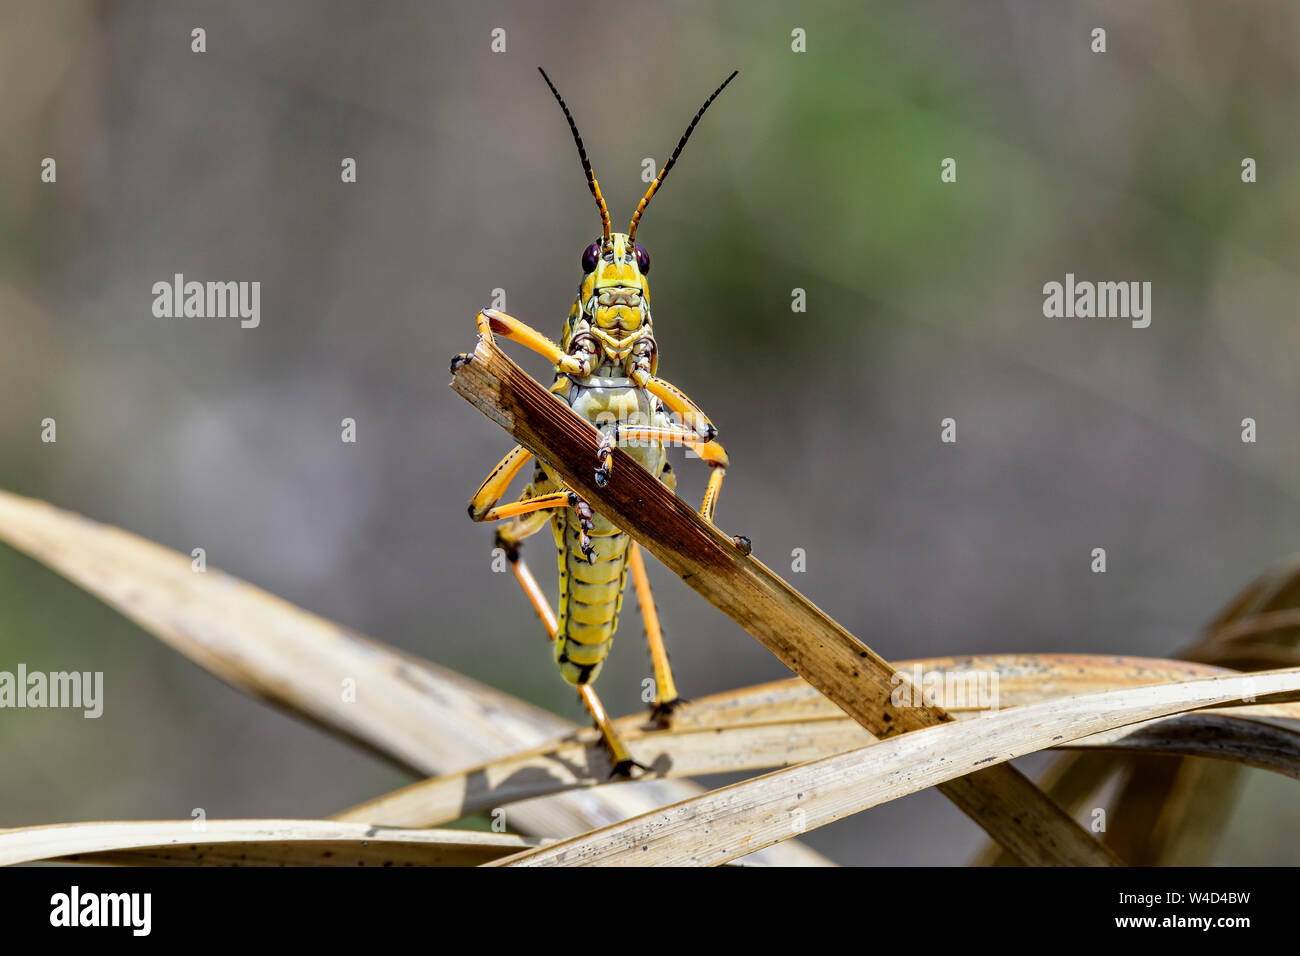 "Bonjour monsieur, que puis-je faire pour vous ?'. Eastern lubber grasshopper. Banque D'Images